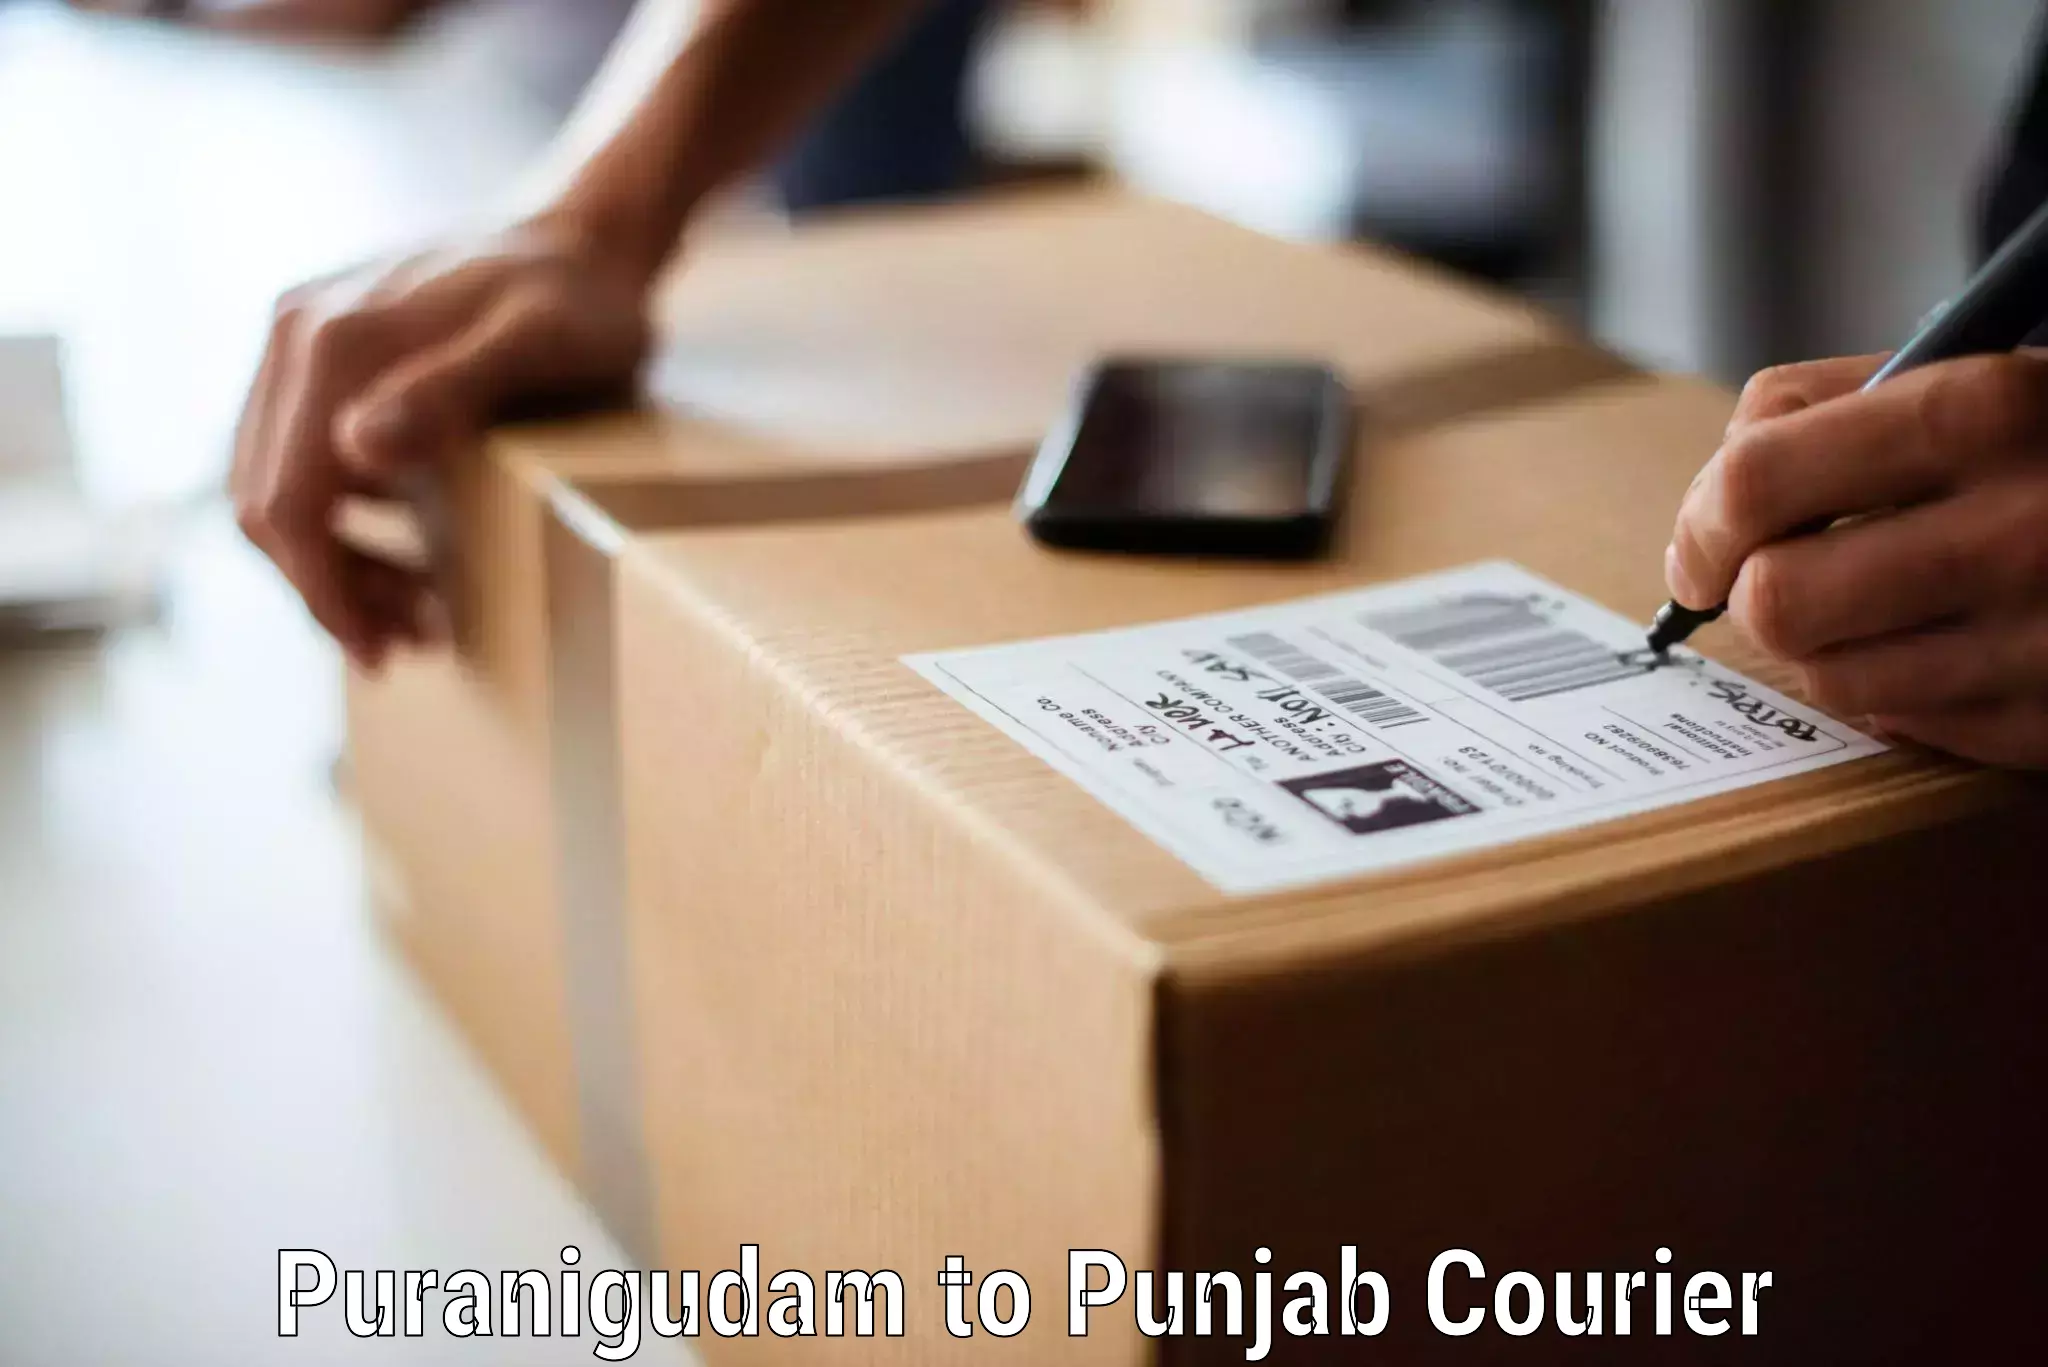 Flexible moving solutions Puranigudam to Punjab